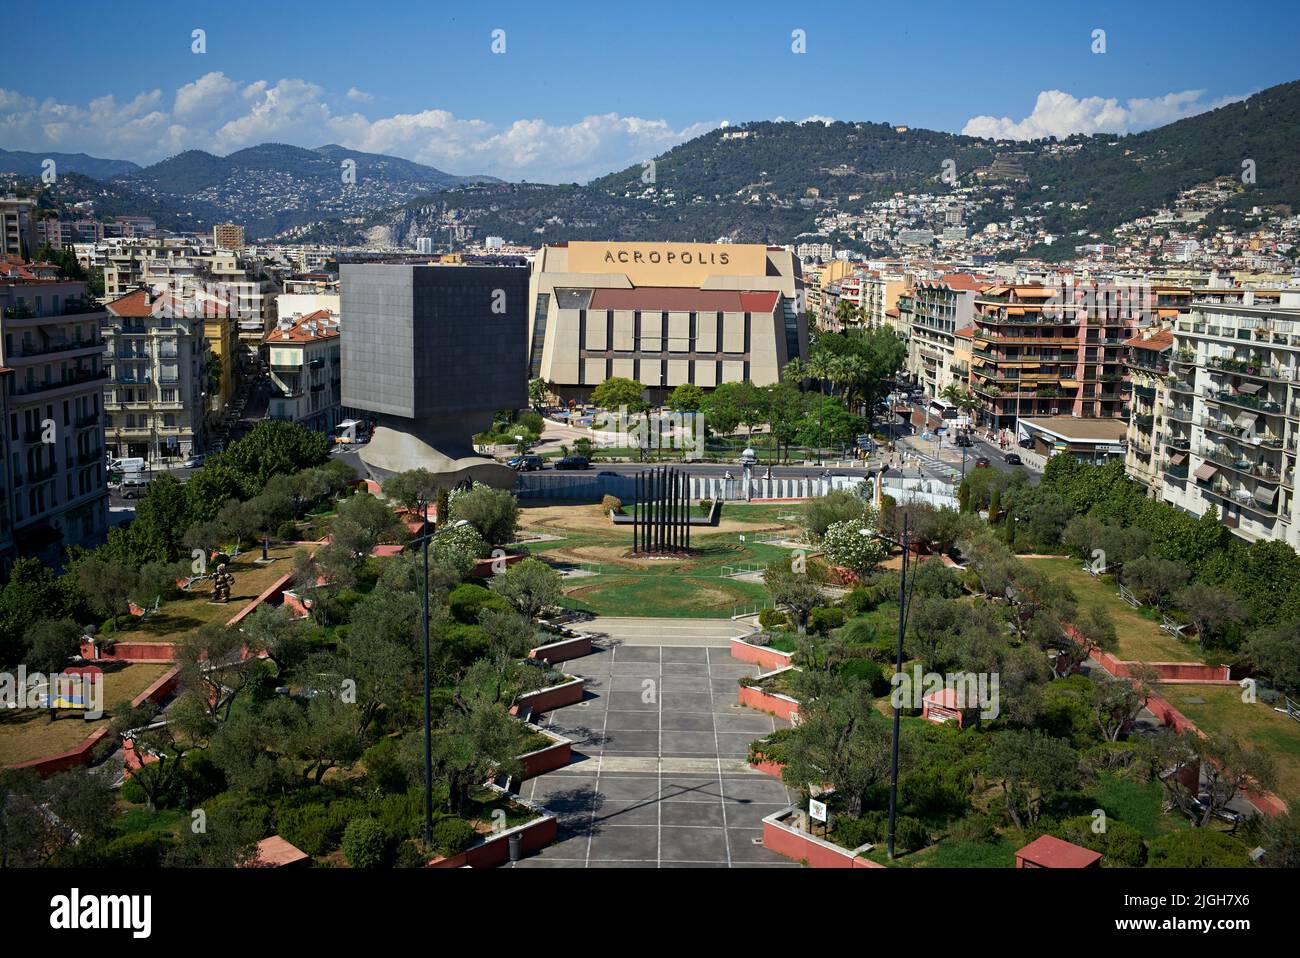 Il Palais des Congrès Acropolis è un centro congressi situato a Nizza, in Francia. Ospita vari convegni, fiere, concerti, opere. Foto Stock